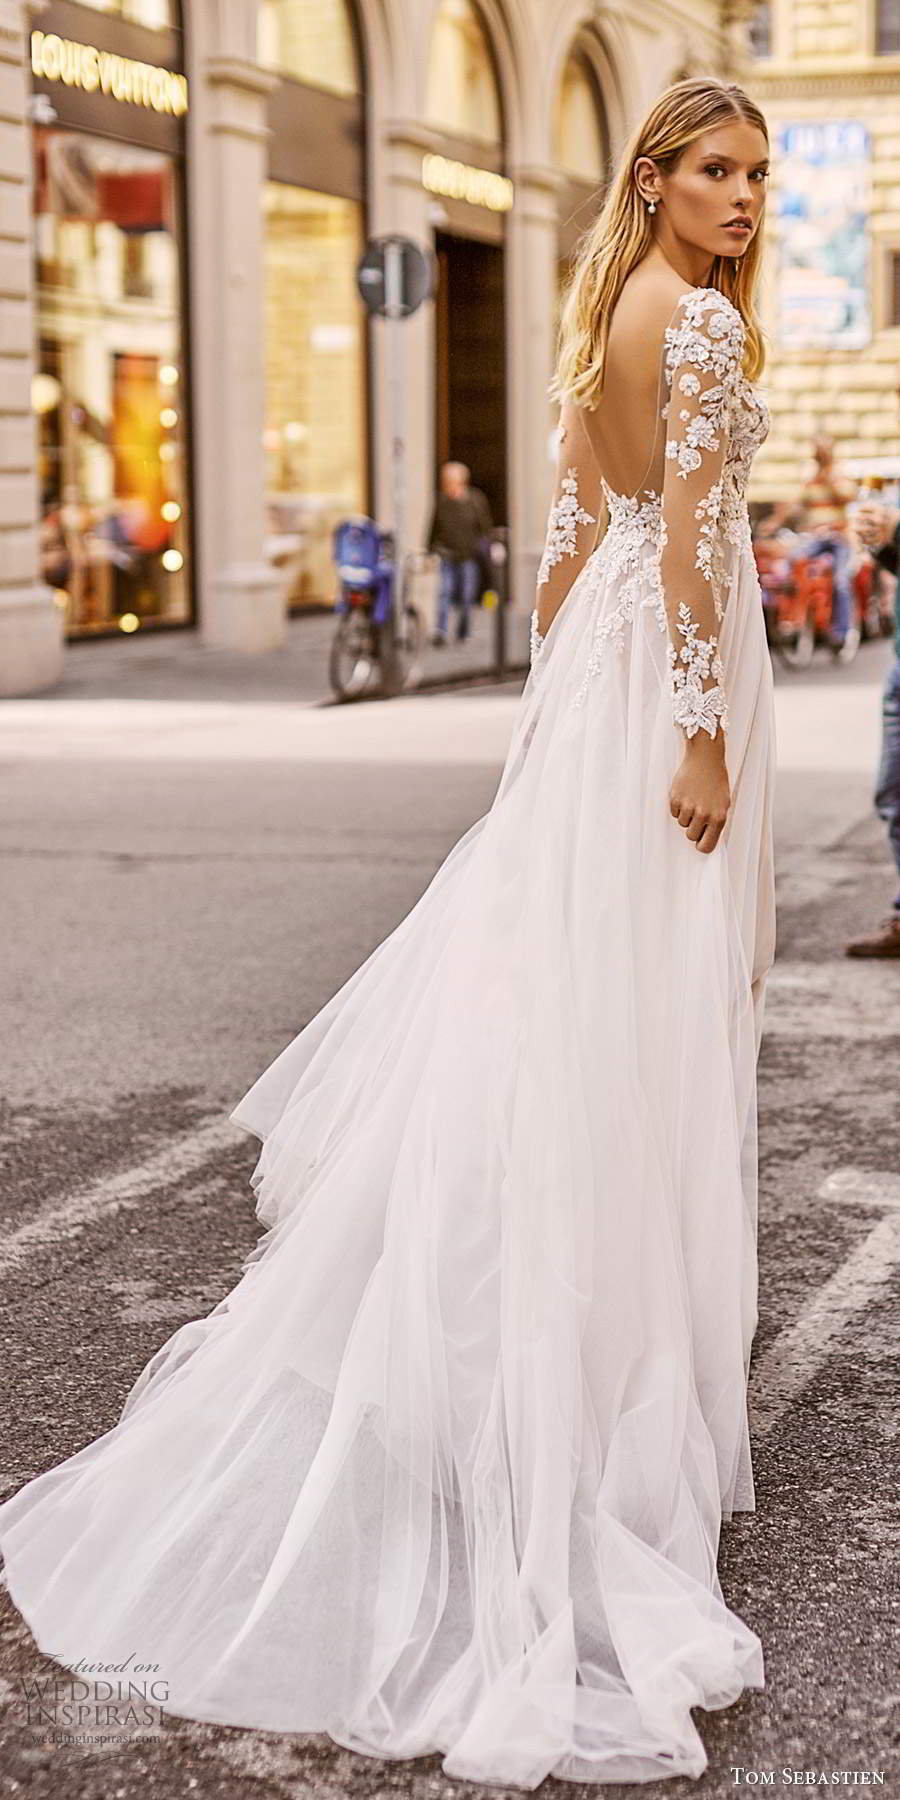 tom sebastien 2020 bridal illusion long sleeves pluging v neckline embellished bodice soft a line wedding dress slit skirt chapel train (2) bv